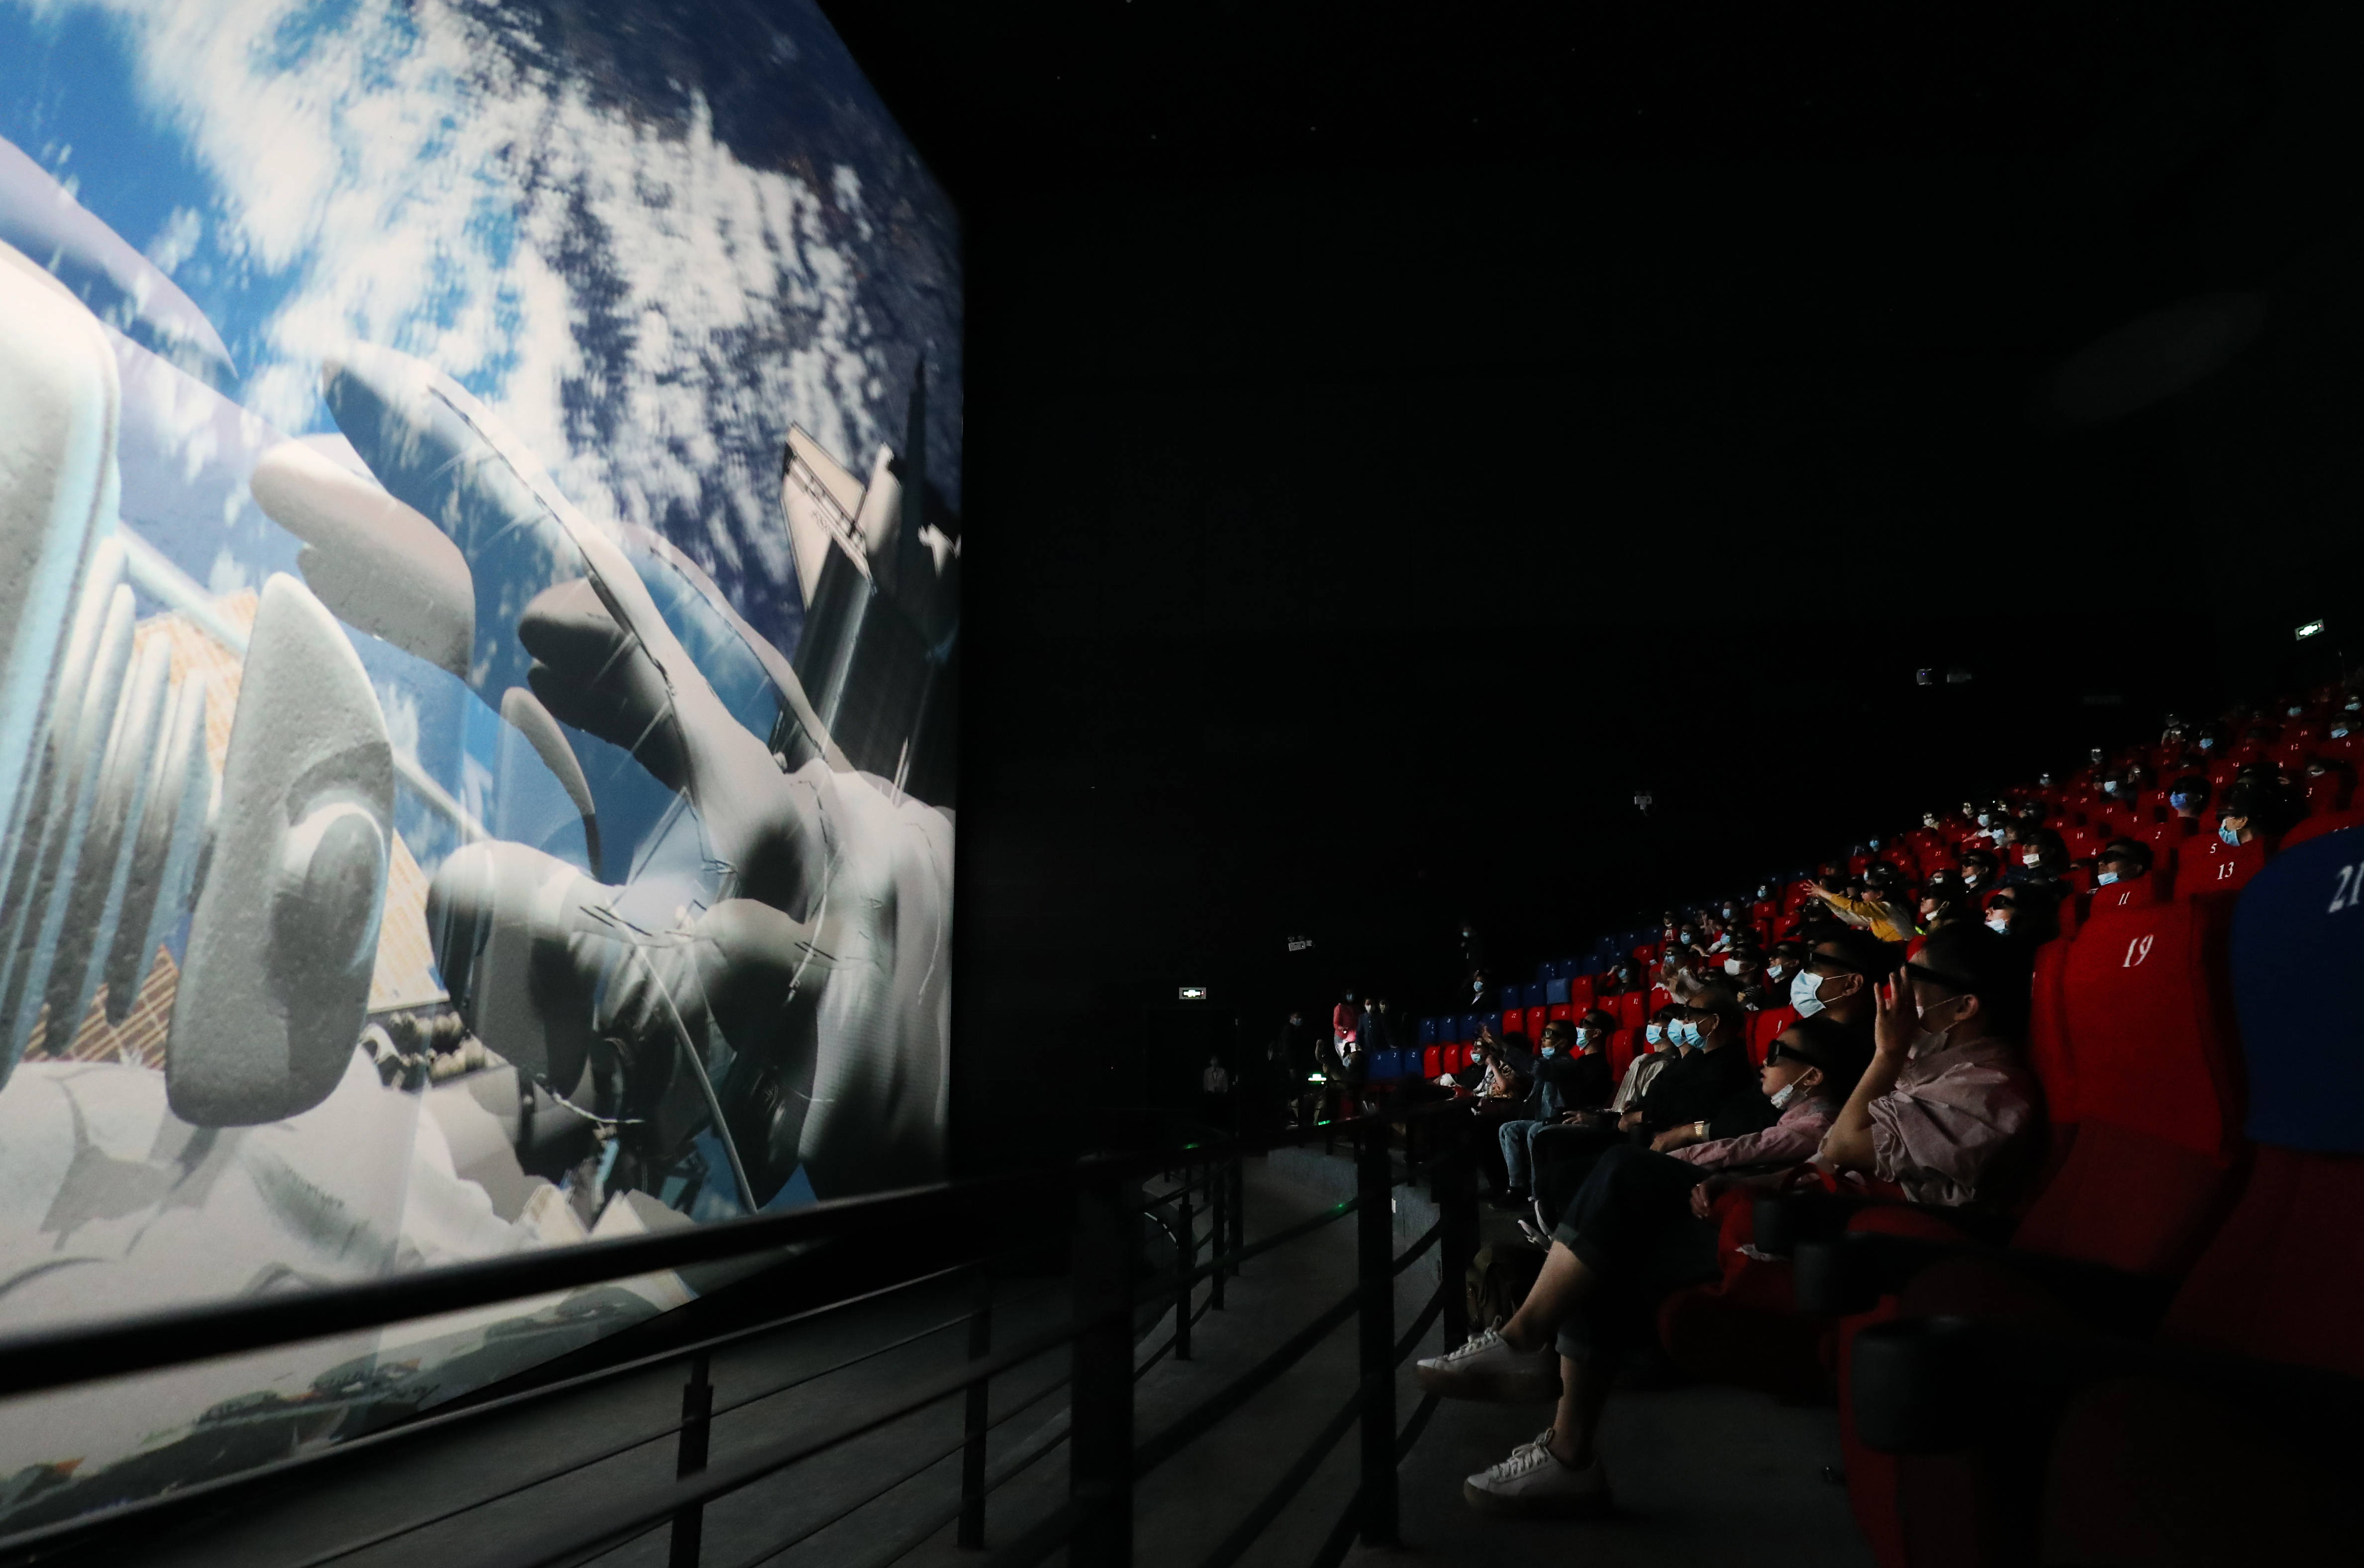 5月2日,游客在上海科技馆影院内观看立体巨幕电影《国际空间站.